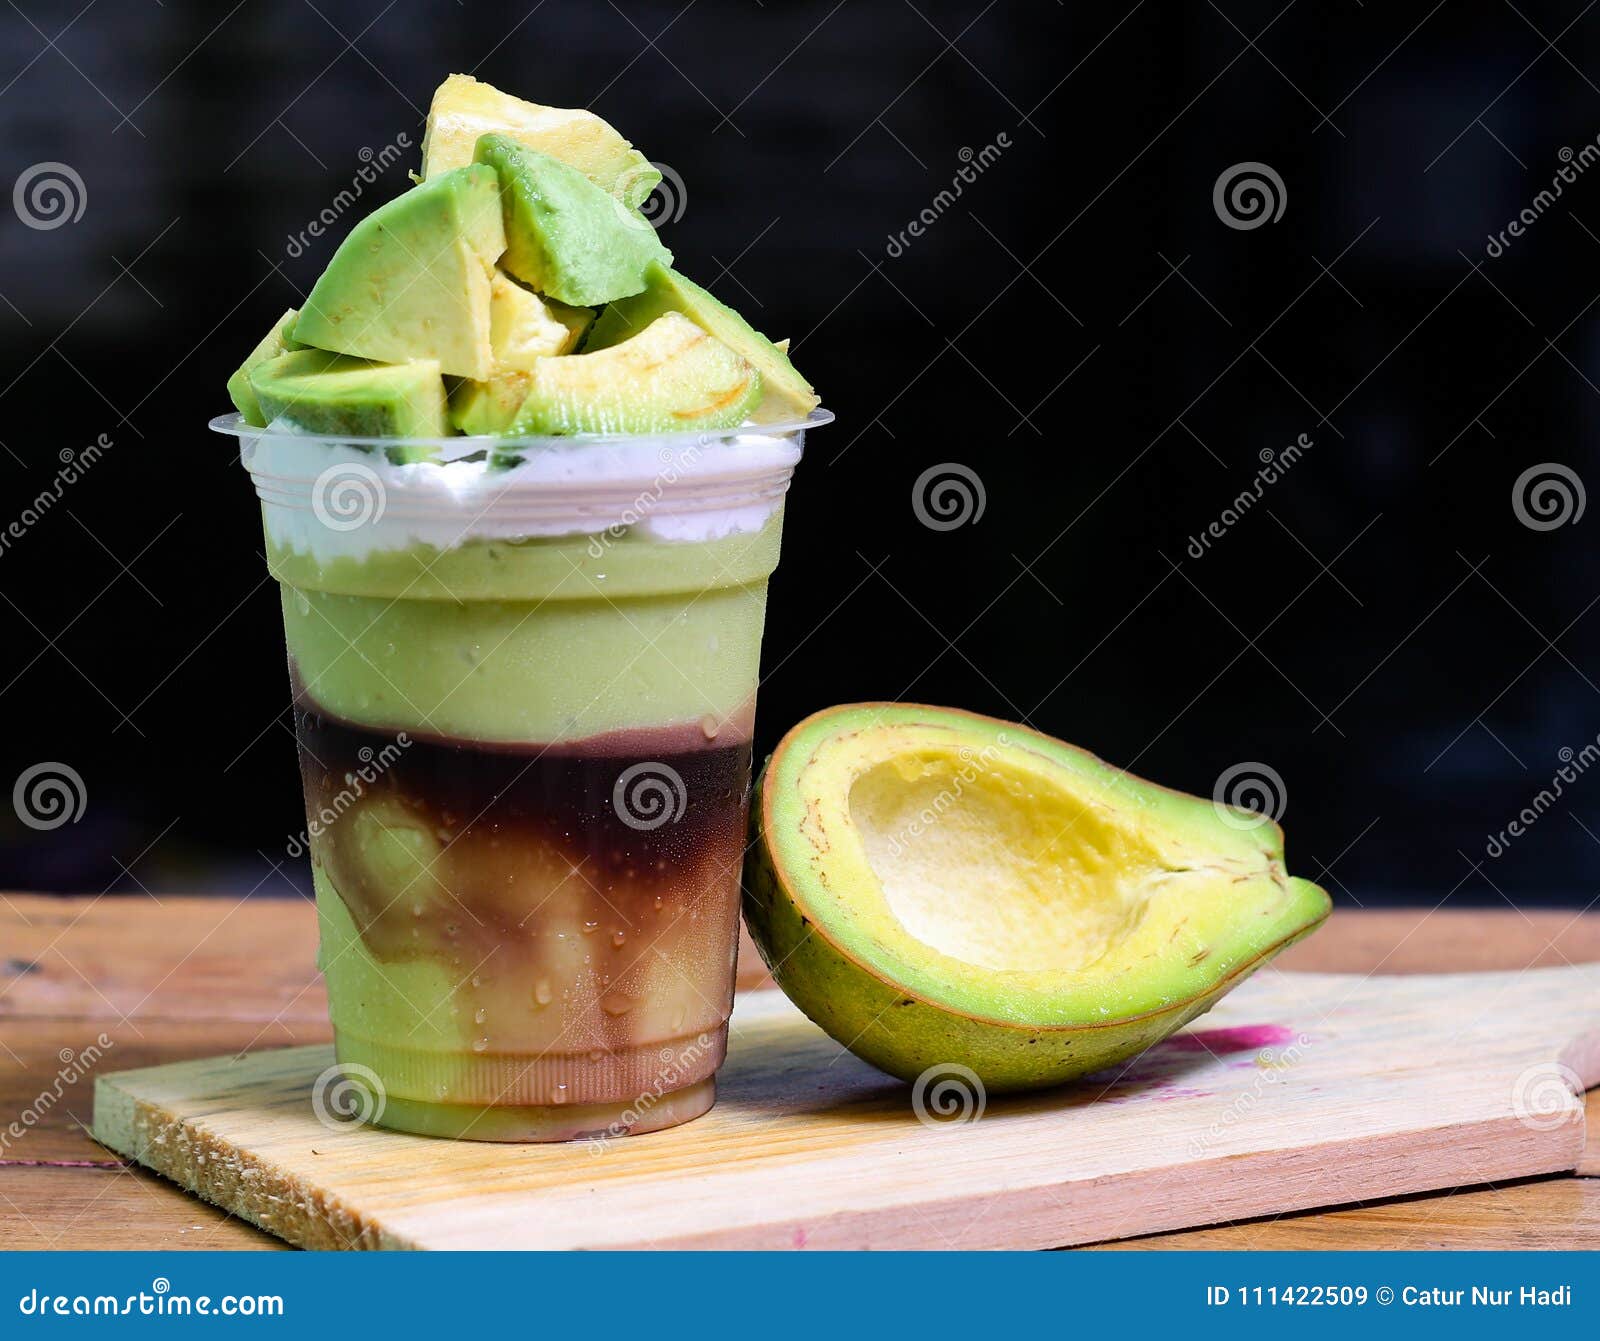 Milkshake with Avocado Pieces, Version 1 Stock Image - Image of close ...